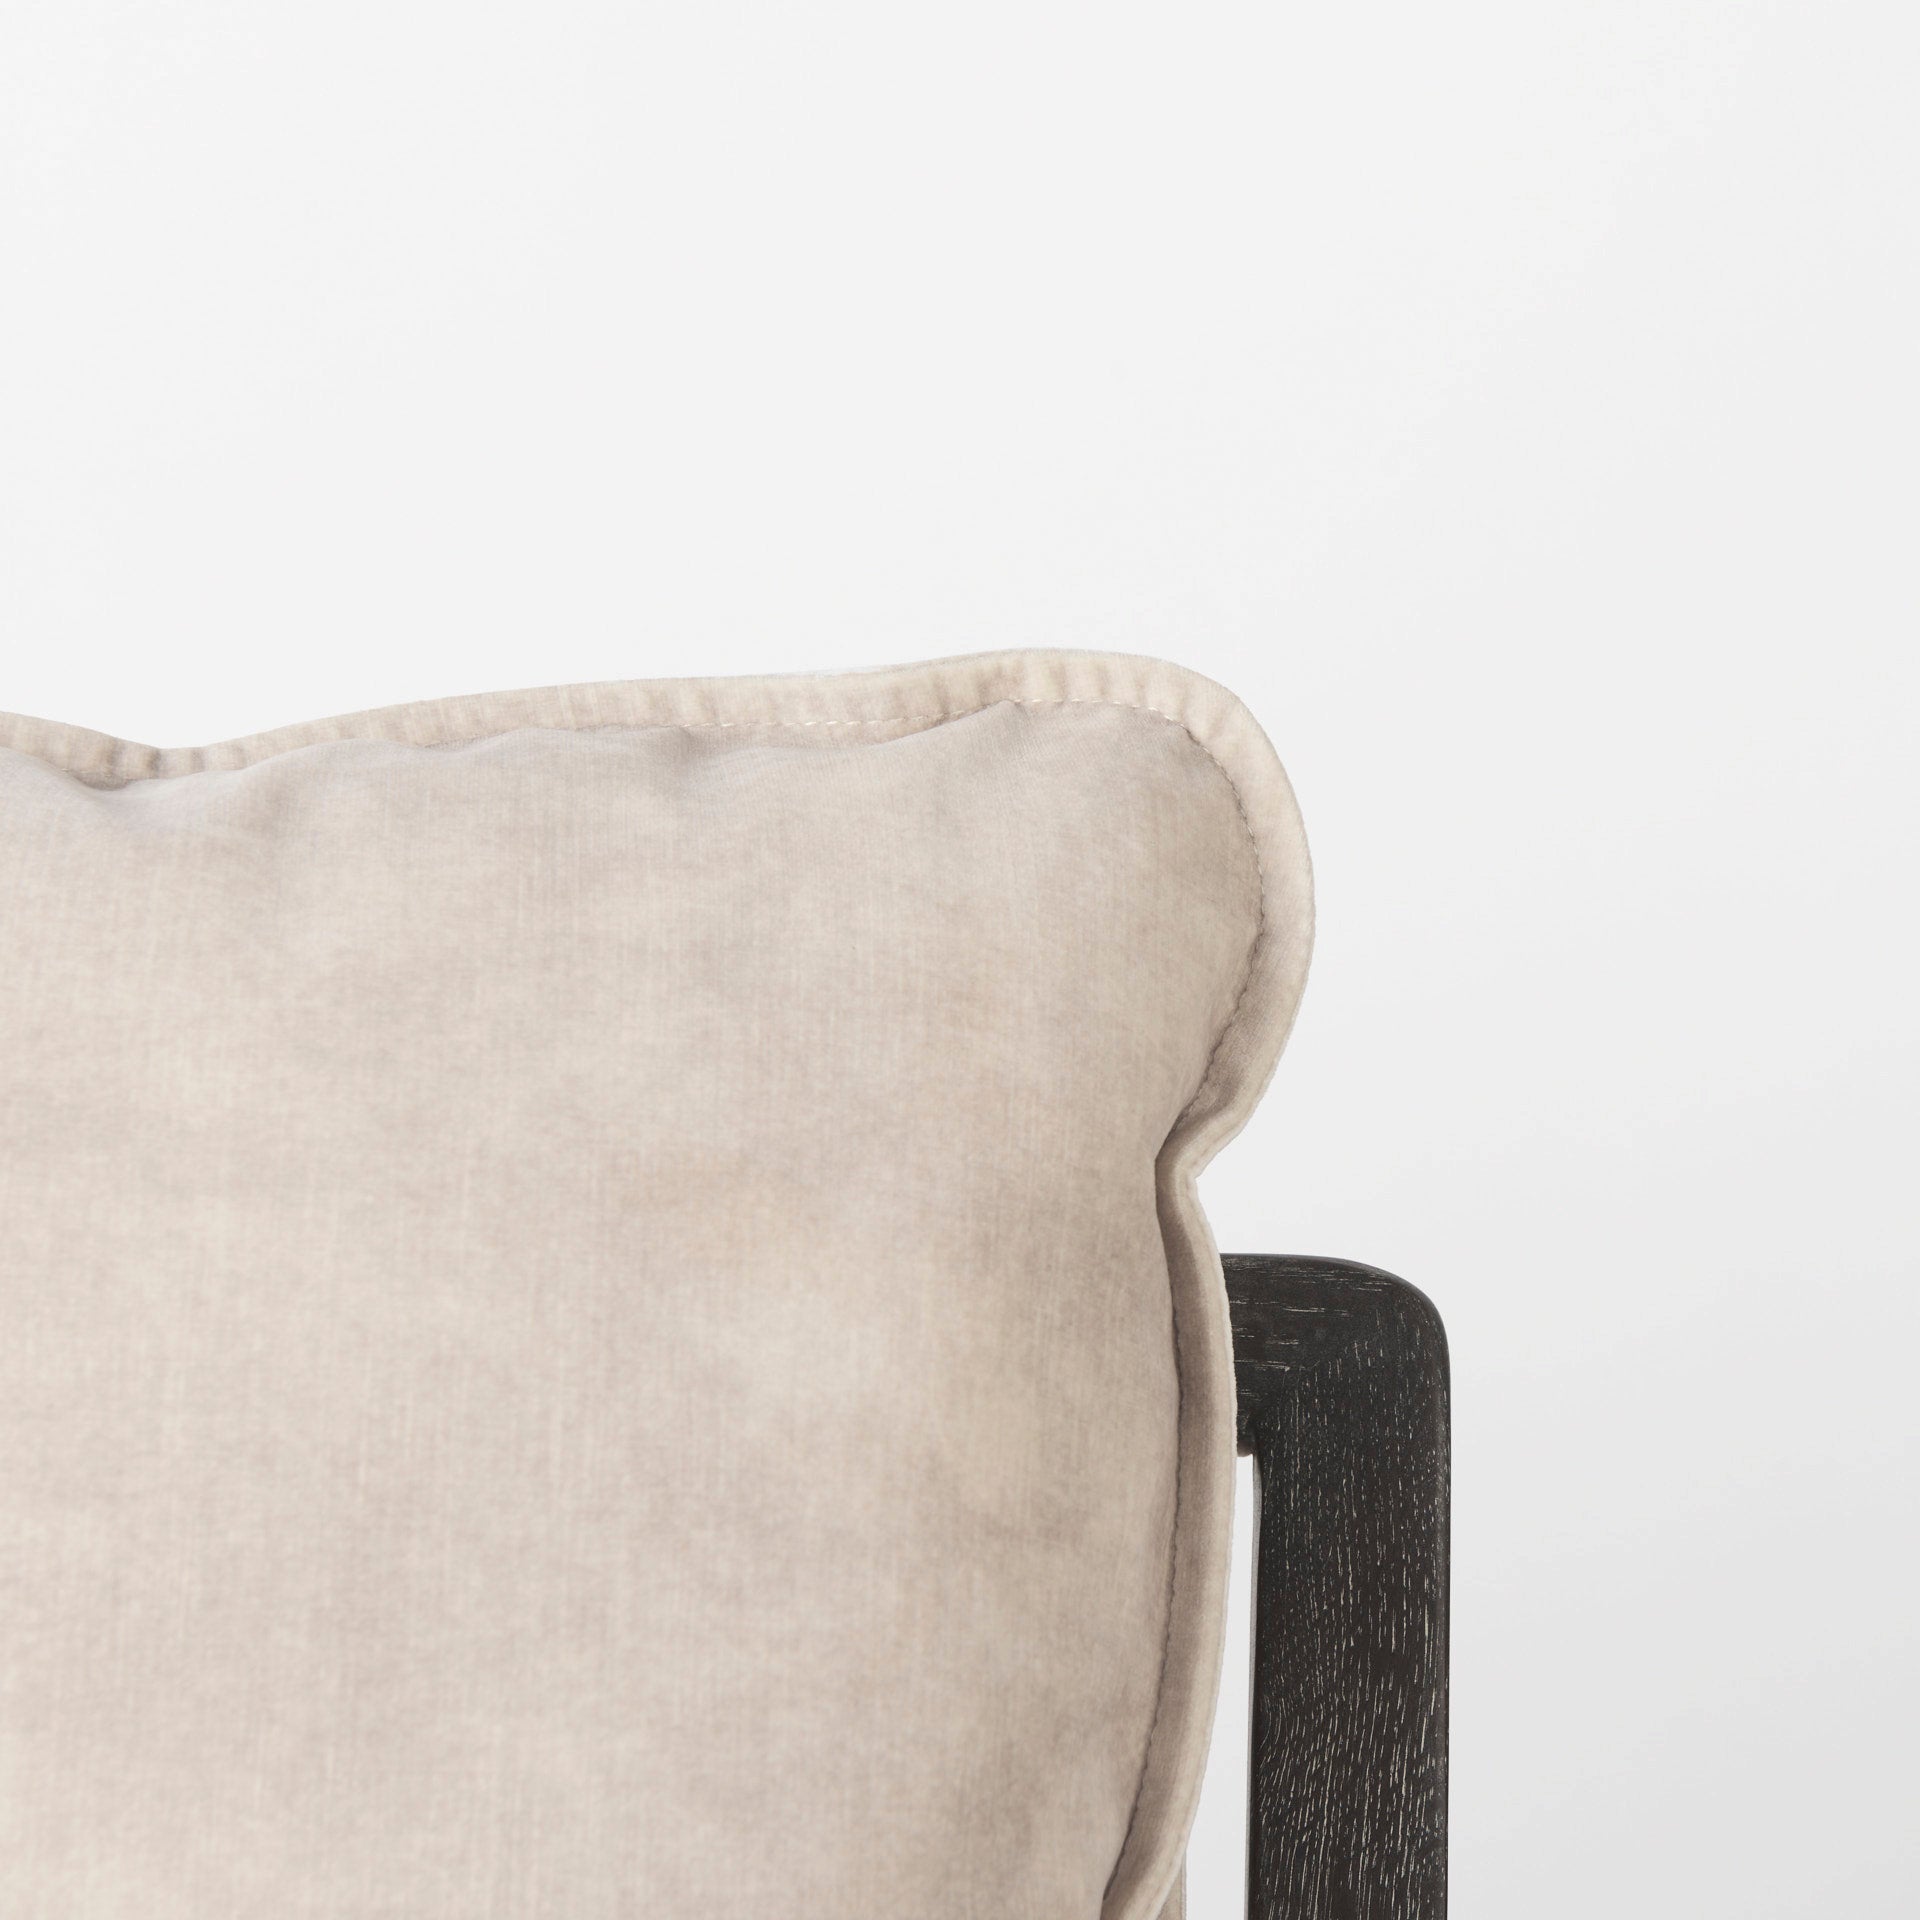 Brayden Accent Chair - Cream & Dark Brown Wood